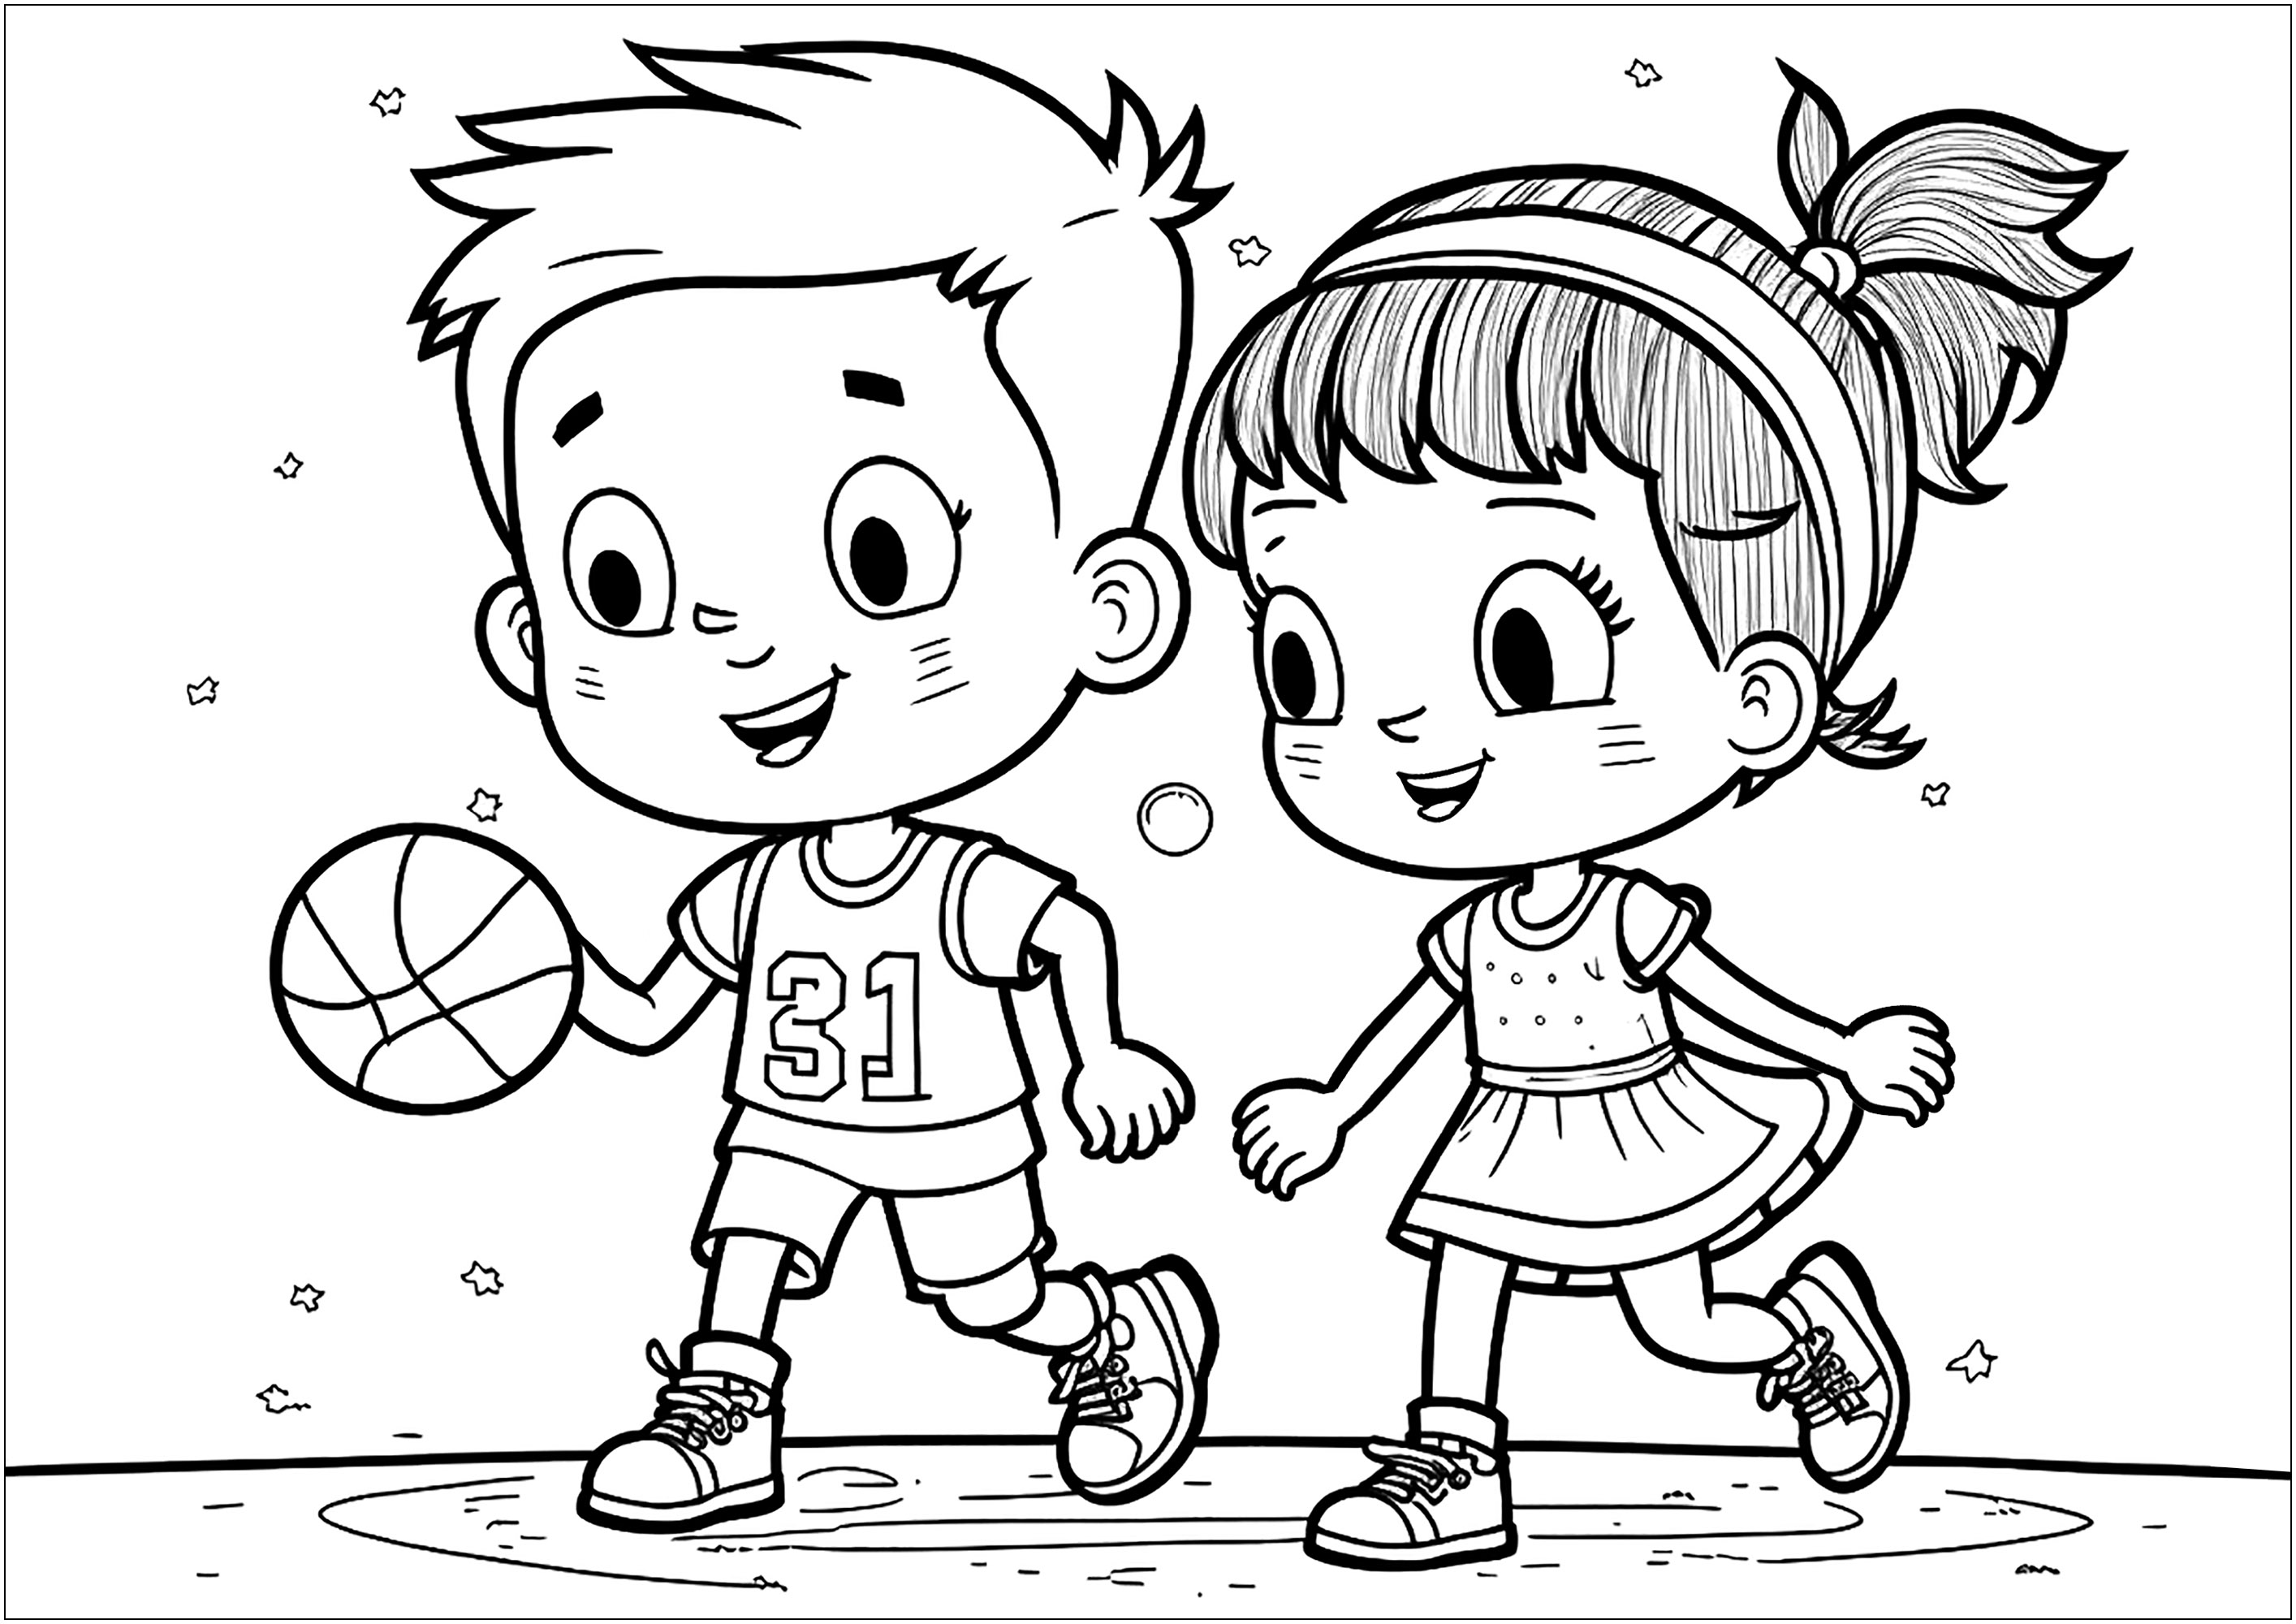 Un niño y una niña juegan juntos al Baloncesto. Los dos niños sonríen y visten ropa deportiva que hay que colorear